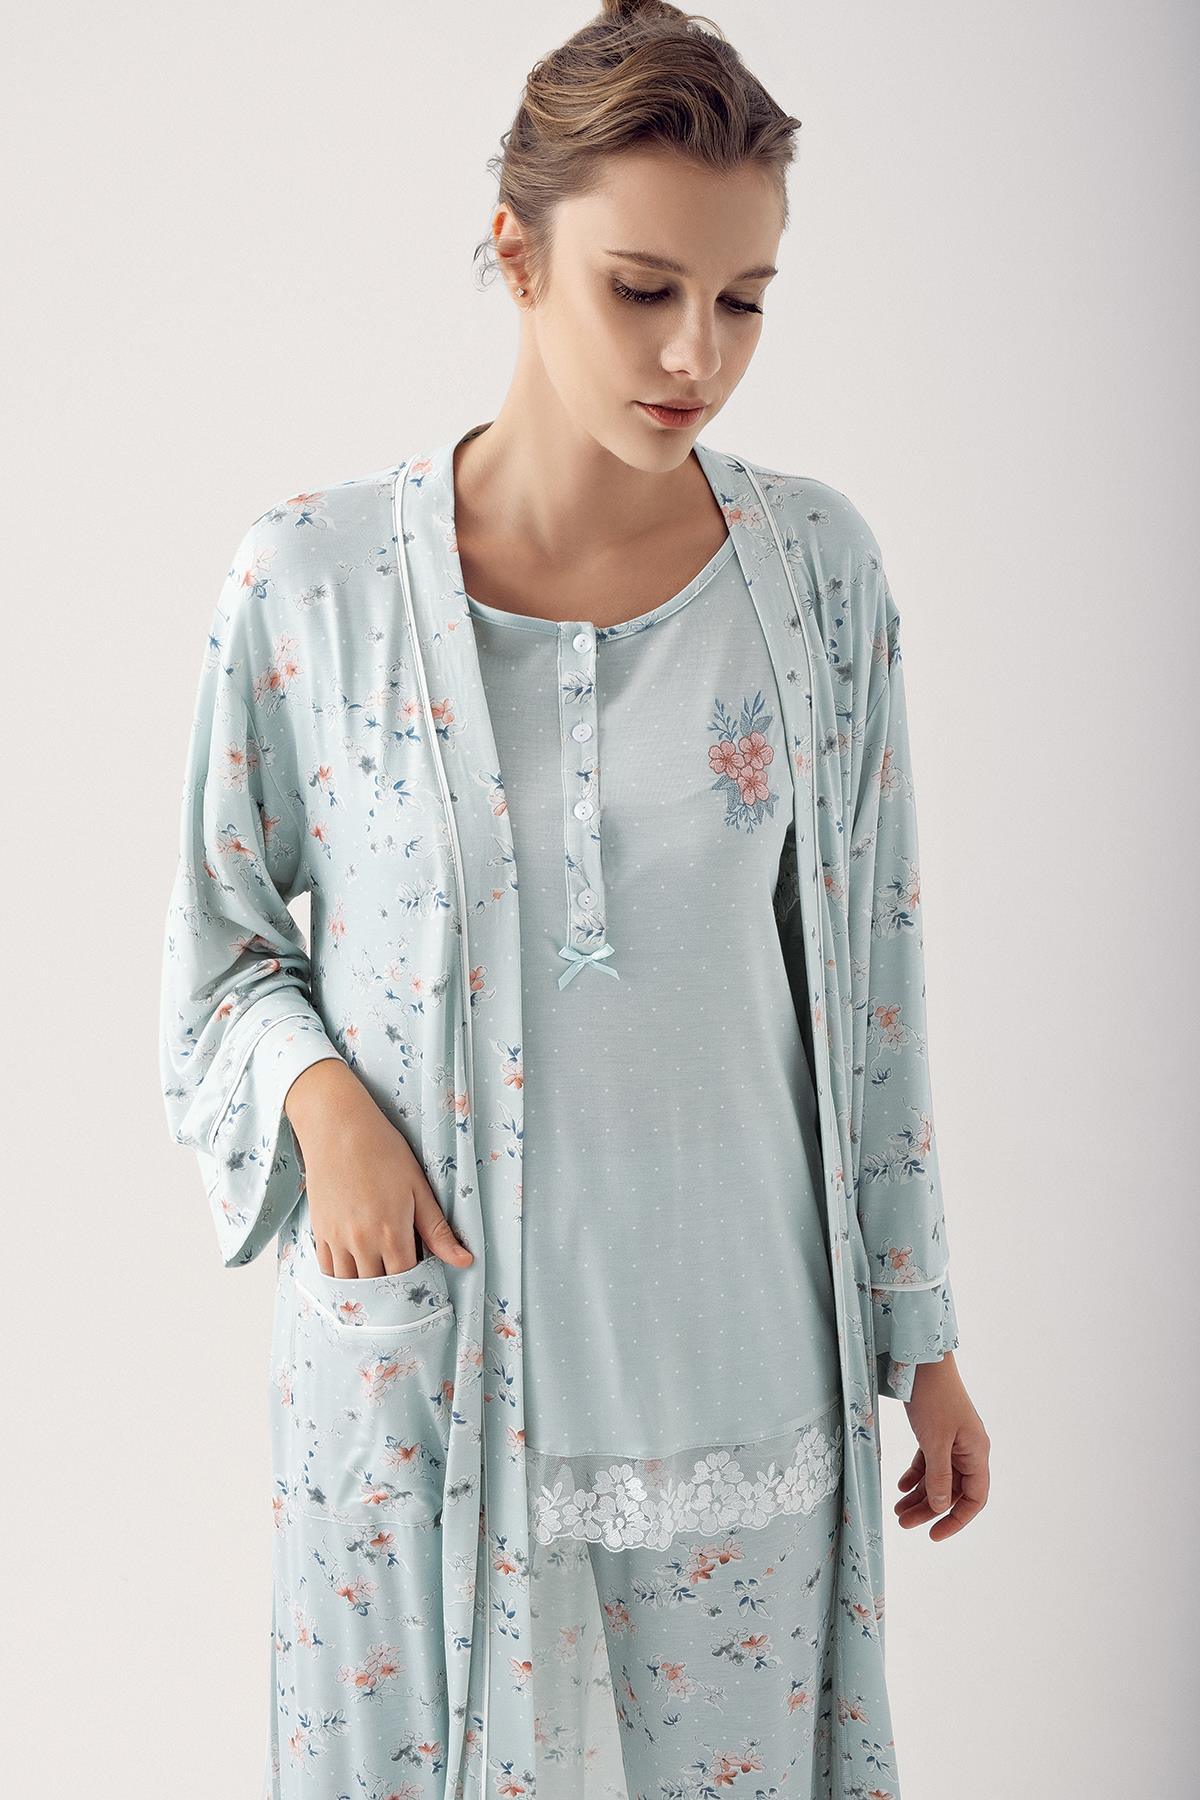 Desenli Likralı Viskon Sabahlık Pijama Takım 14305 - Artış Collection